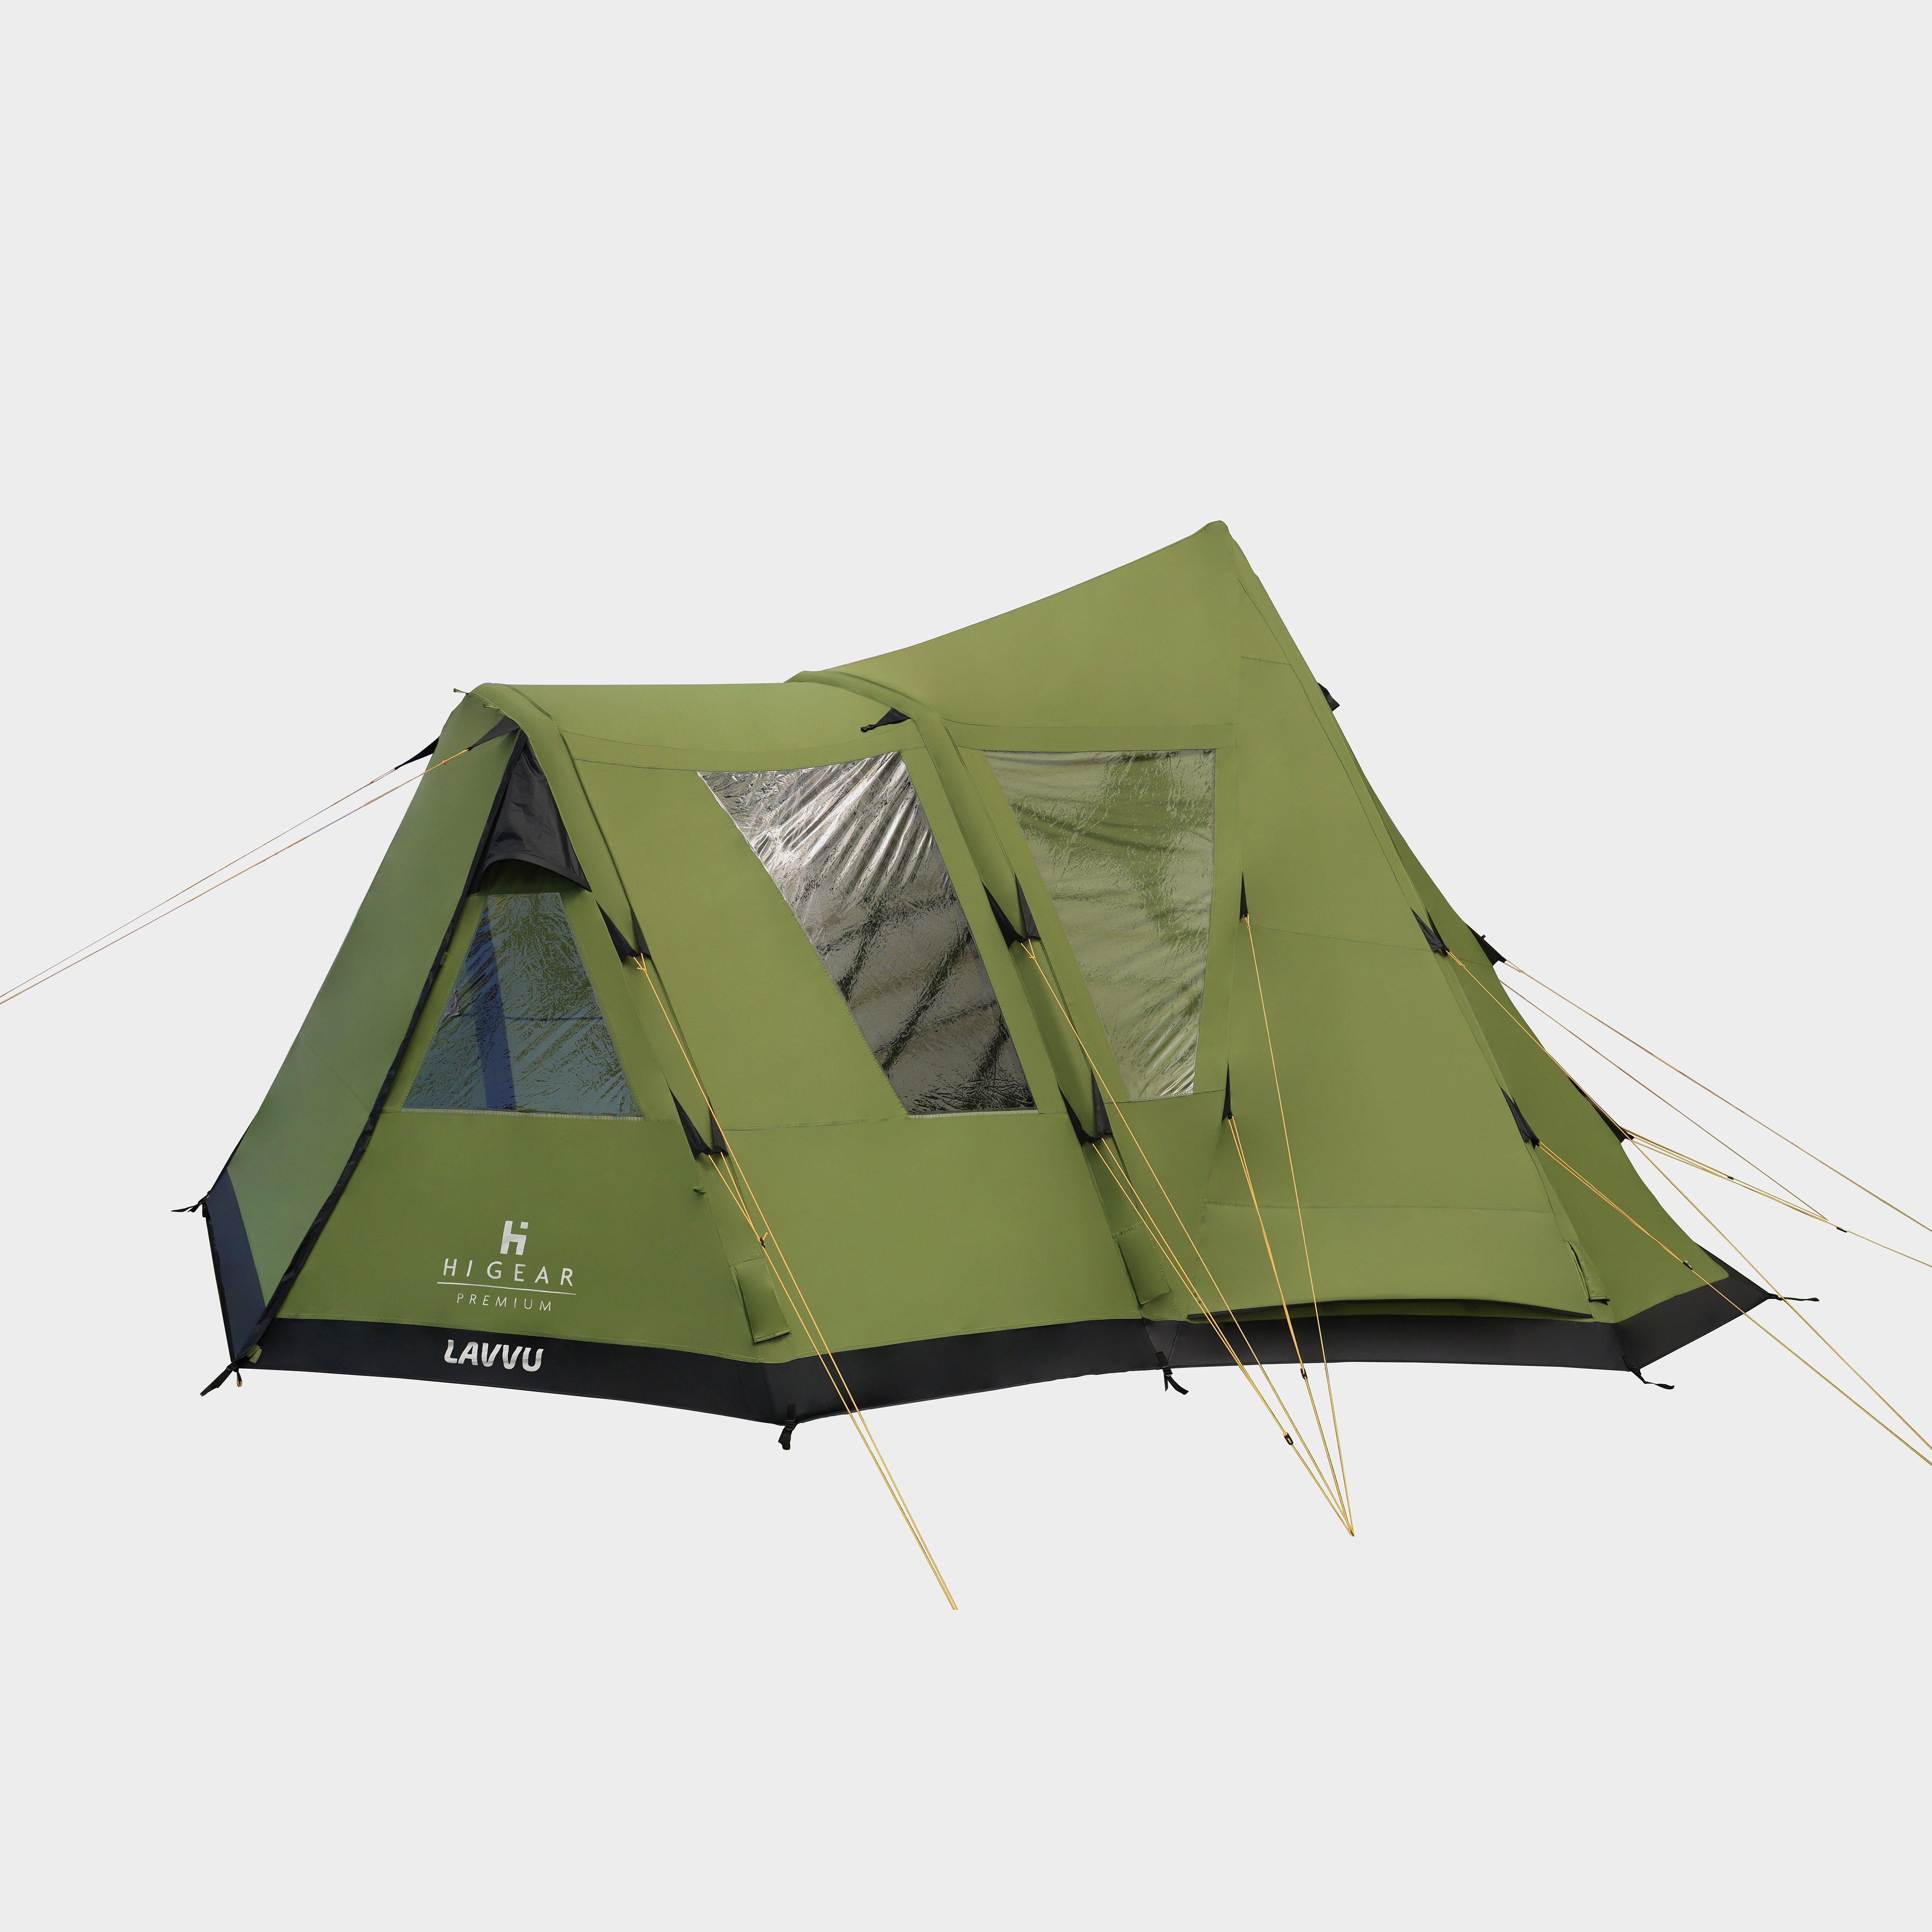  HI-GEAR Lavvu Air Elite Tipi Tent, Green